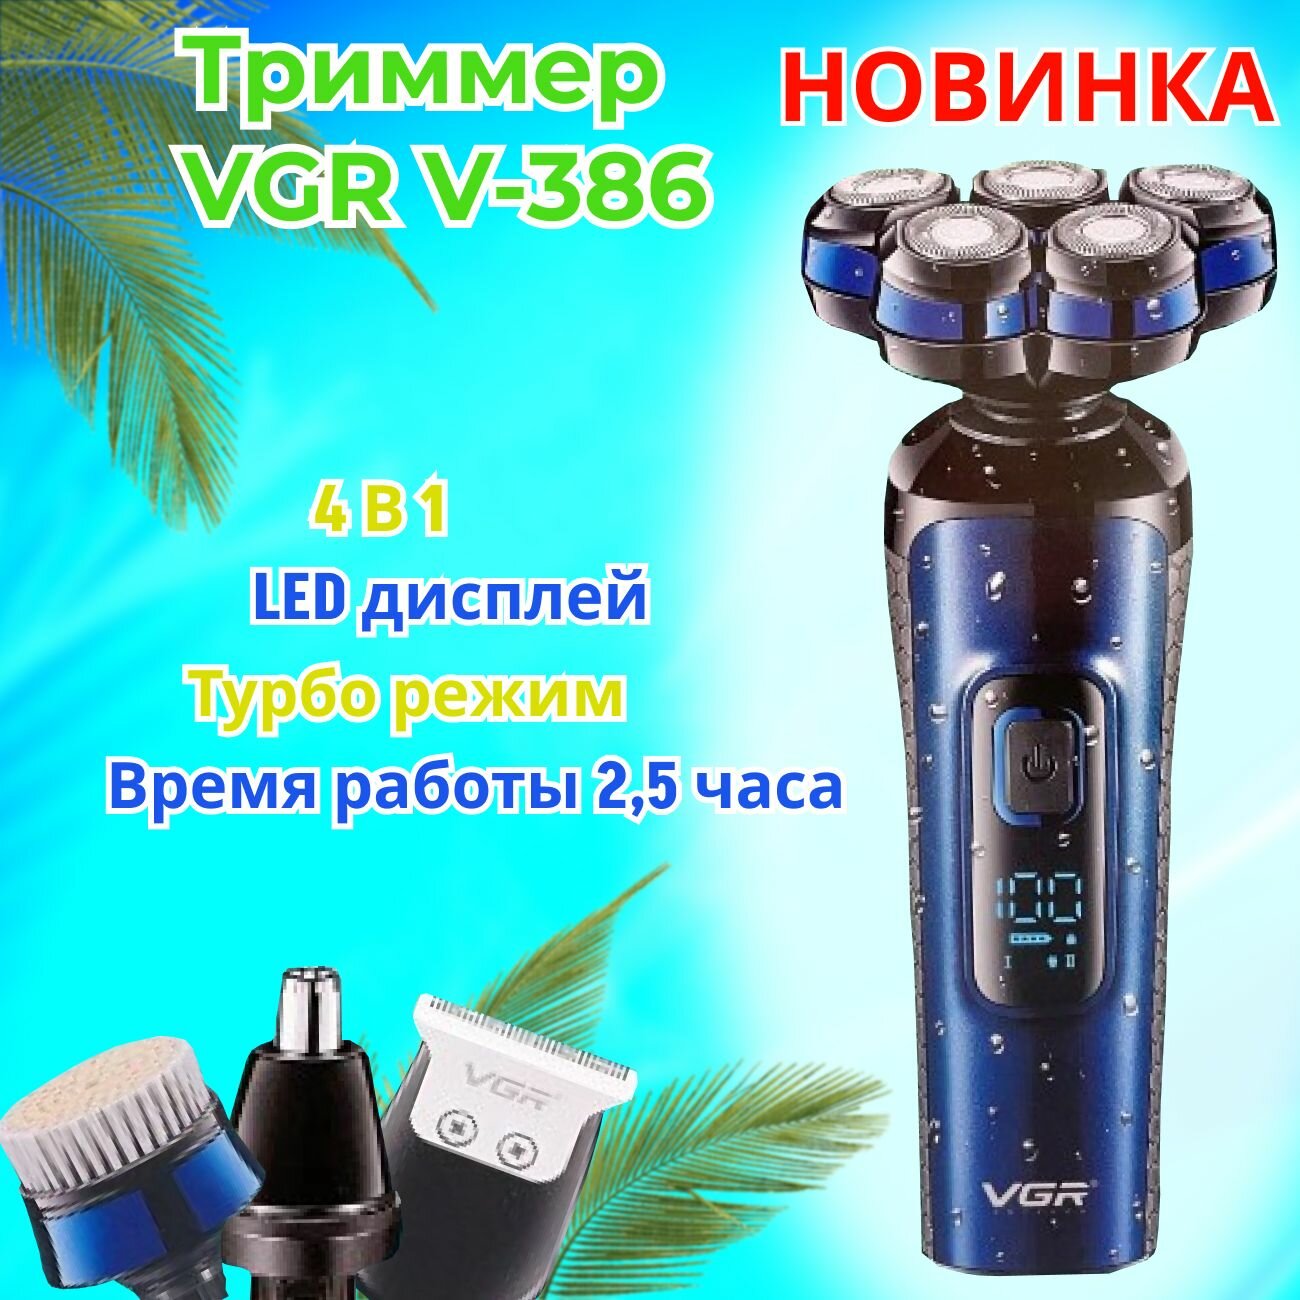 Триммер для бороды / электробритва VGR V-386